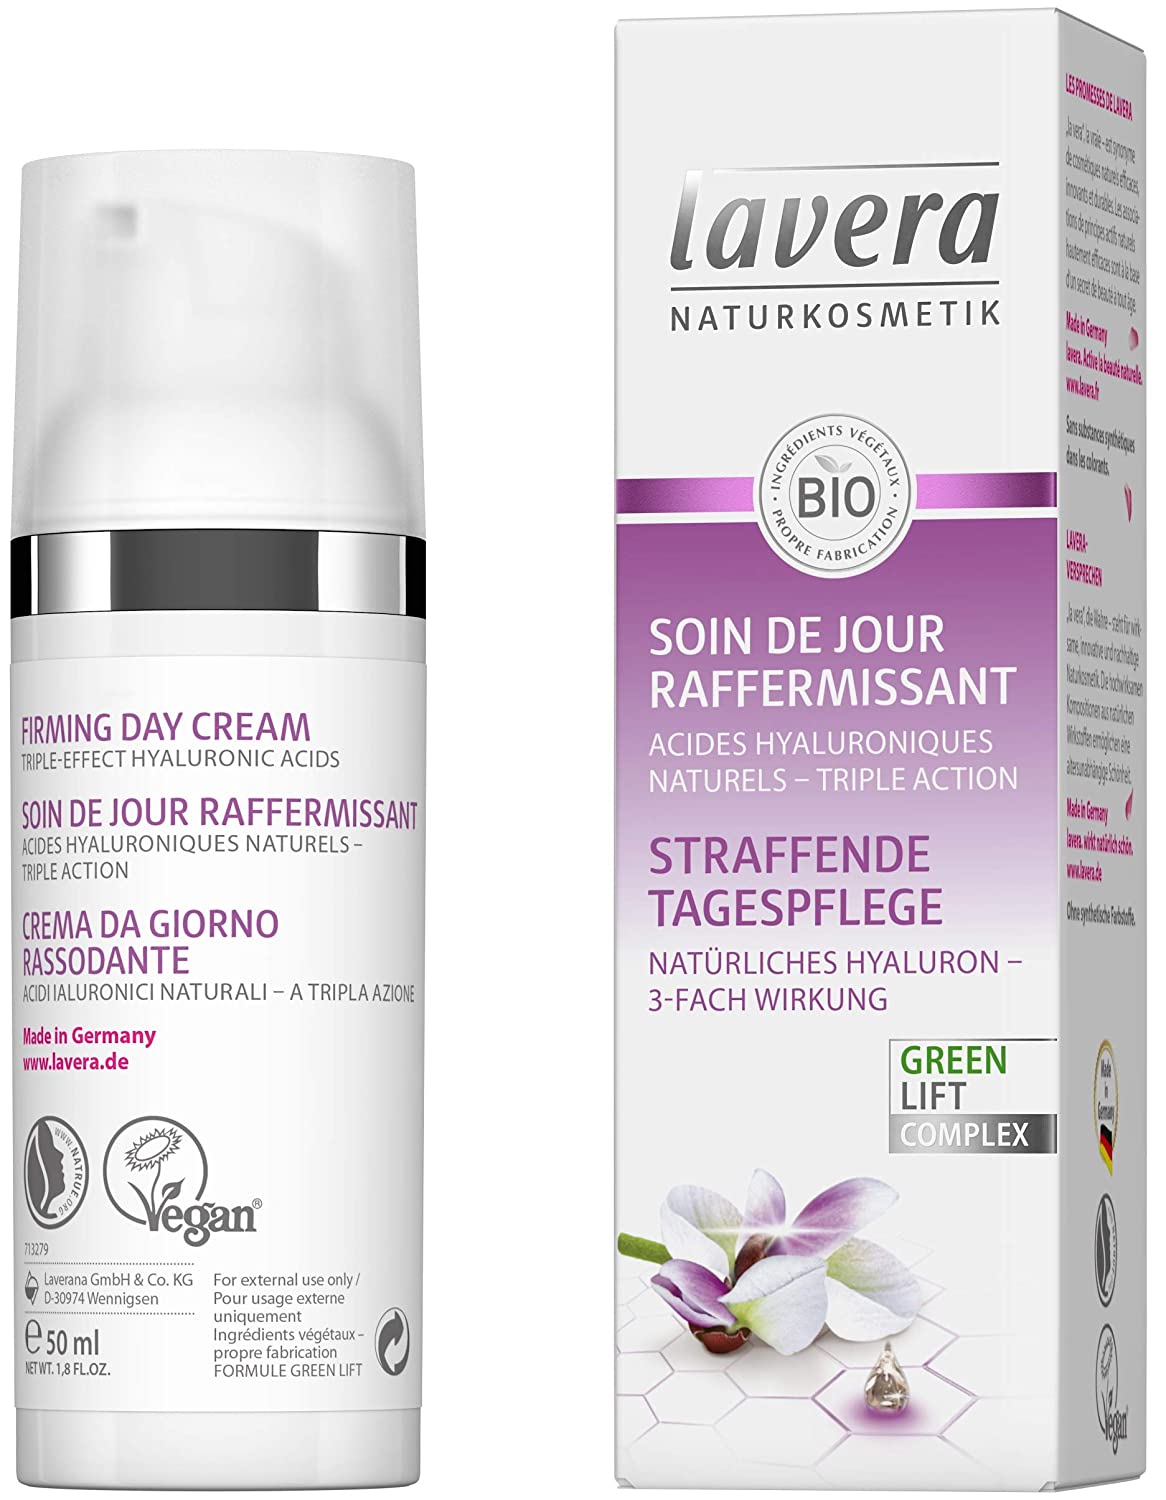 Lavera Karanja Anti-Ageing Hyaluronic Acid Vegan Natural Cosmetics Organic Vegetable Ingredients 100% Natural (2 x 50 ml)